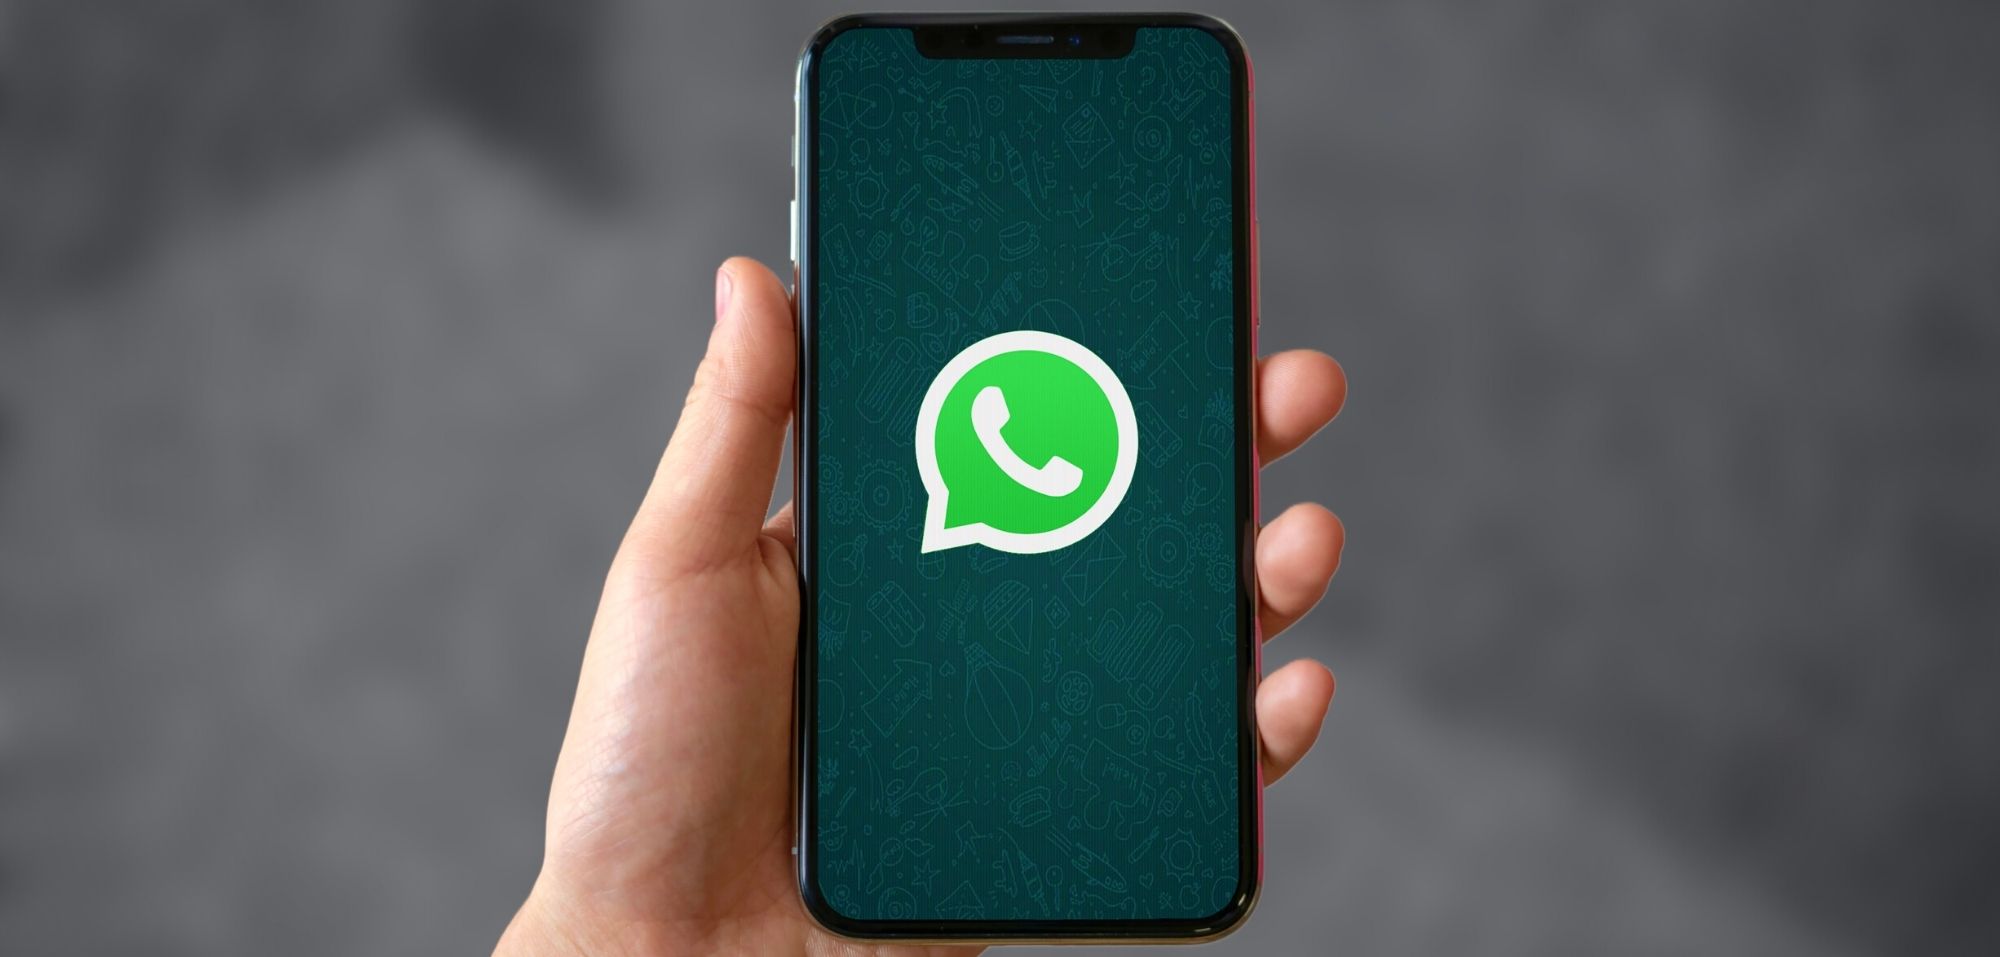 WhatsApp: ikon baru – siapa pun yang mengkliknya akan membuka fungsinya